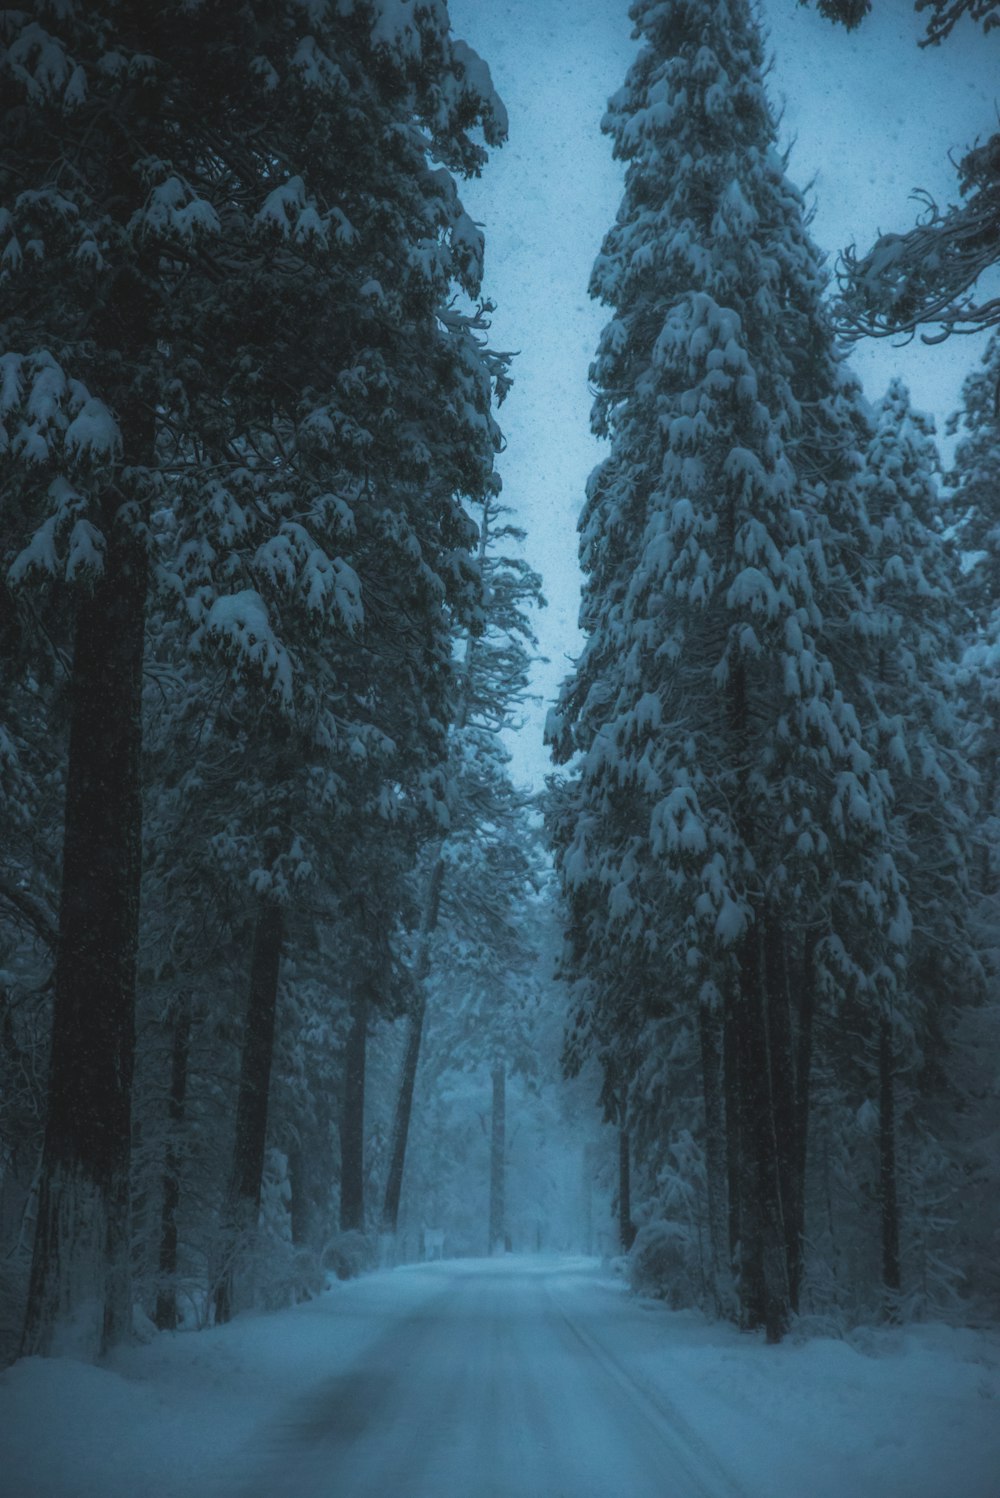 estrada cercada por árvores cobertas de neve